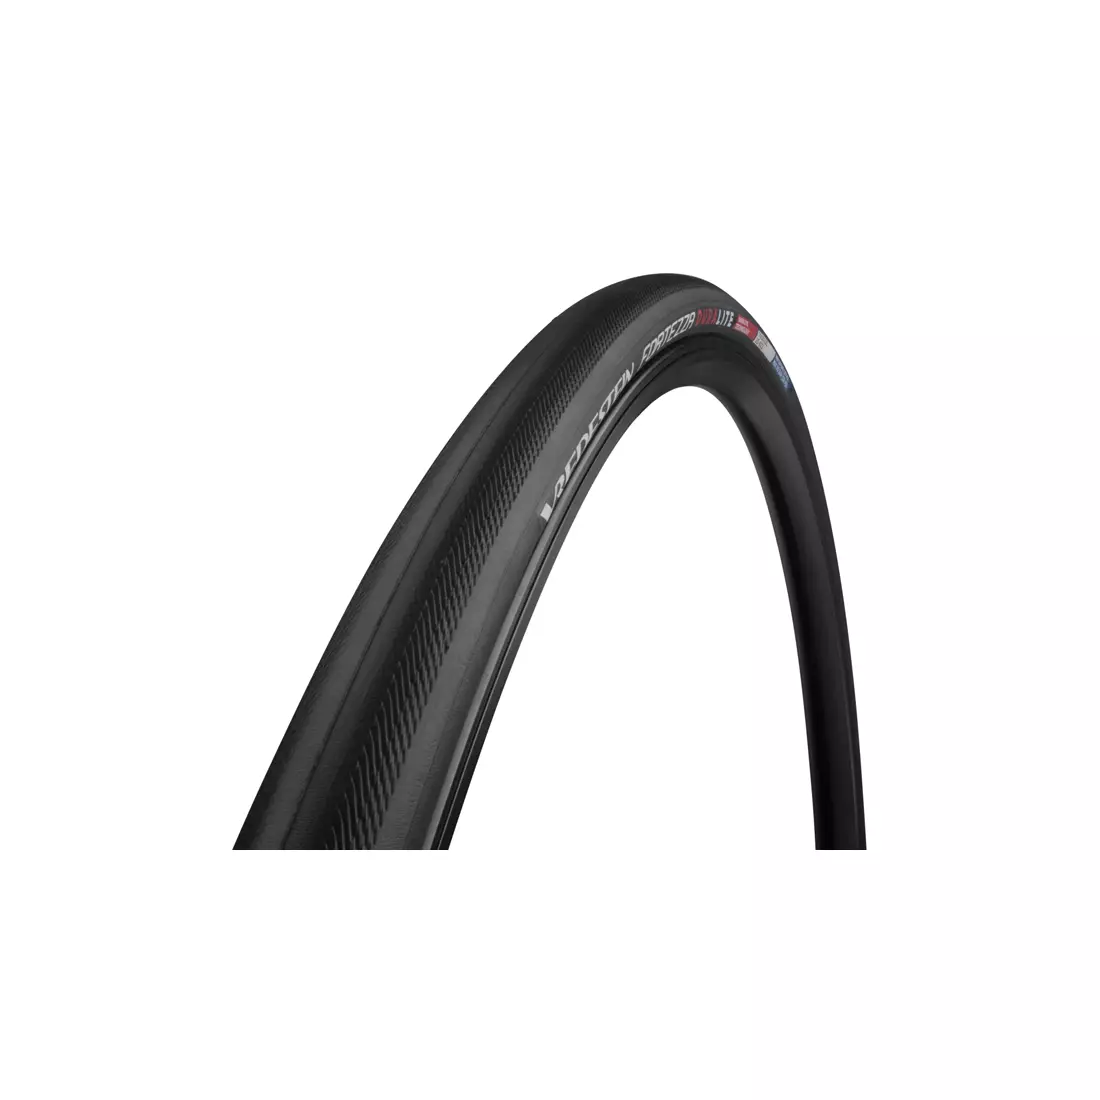 Silniční cyklistická pneumatika VREDESTEIN FORTEZZA DURALITE 700x25 (25-622) srolovací ponožka proti propíchnutí TPI150 195g Černá VRD-28549